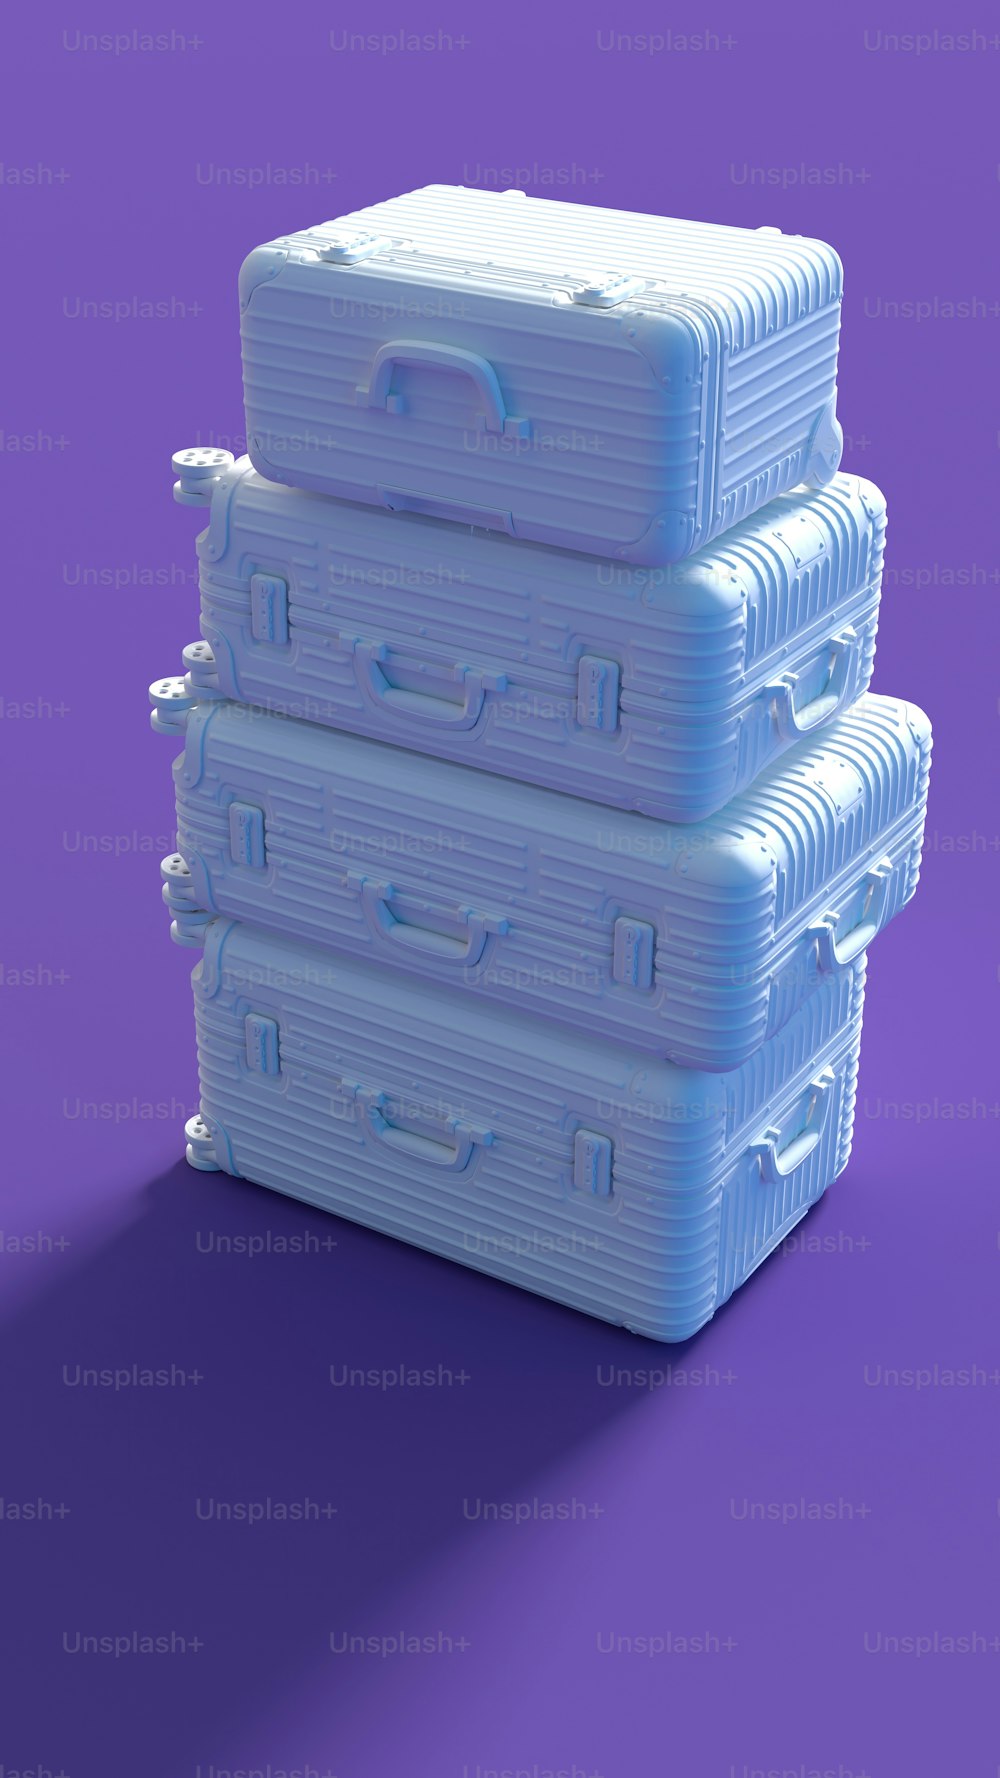 une pile de trois caisses en plastique posées sur une surface violette